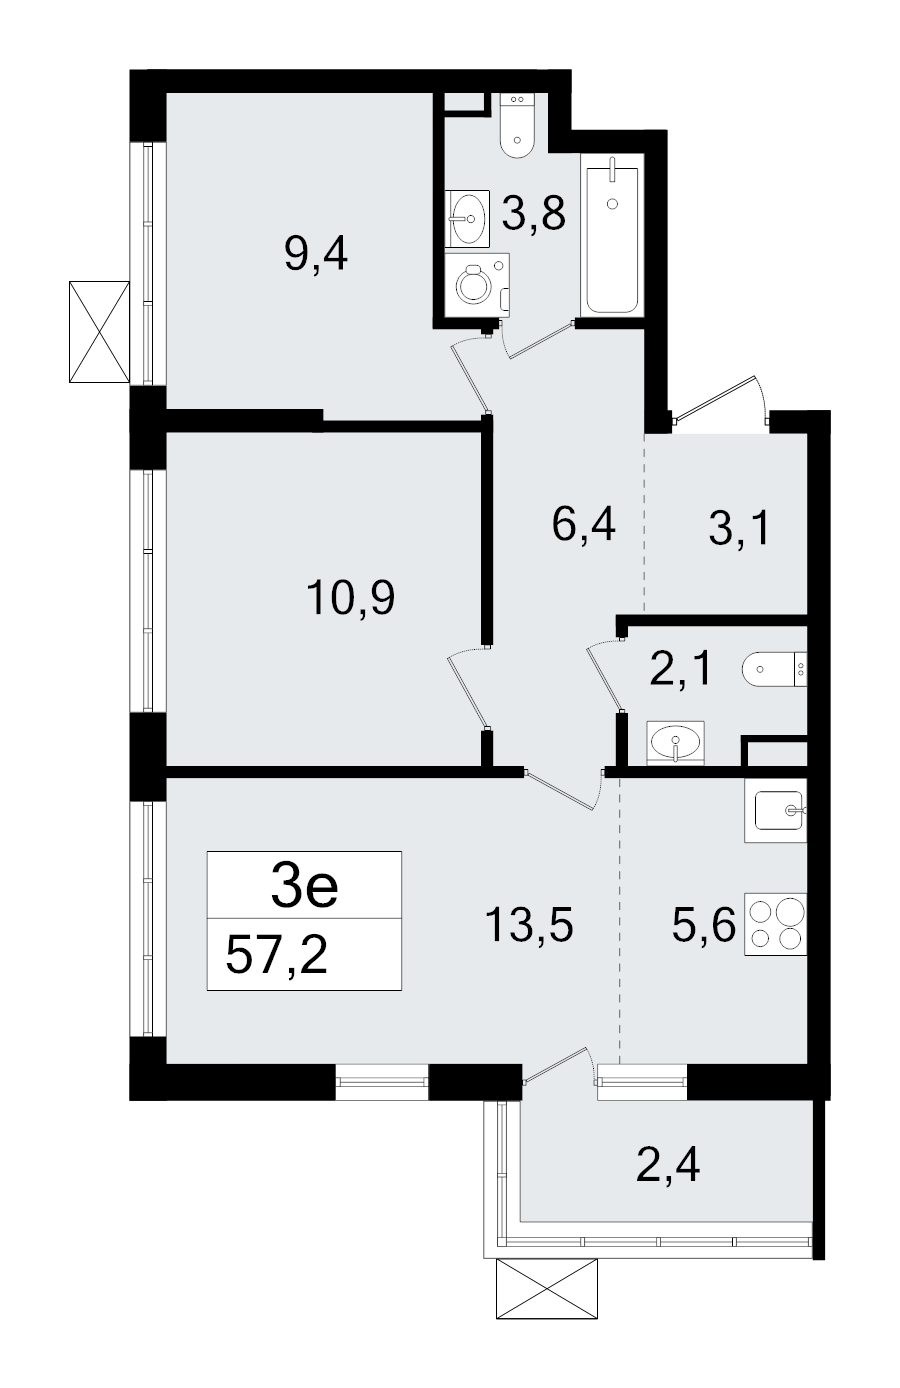 3-комнатная (Евро) квартира, 57.2 м² в ЖК "А101 Всеволожск" - планировка, фото №1